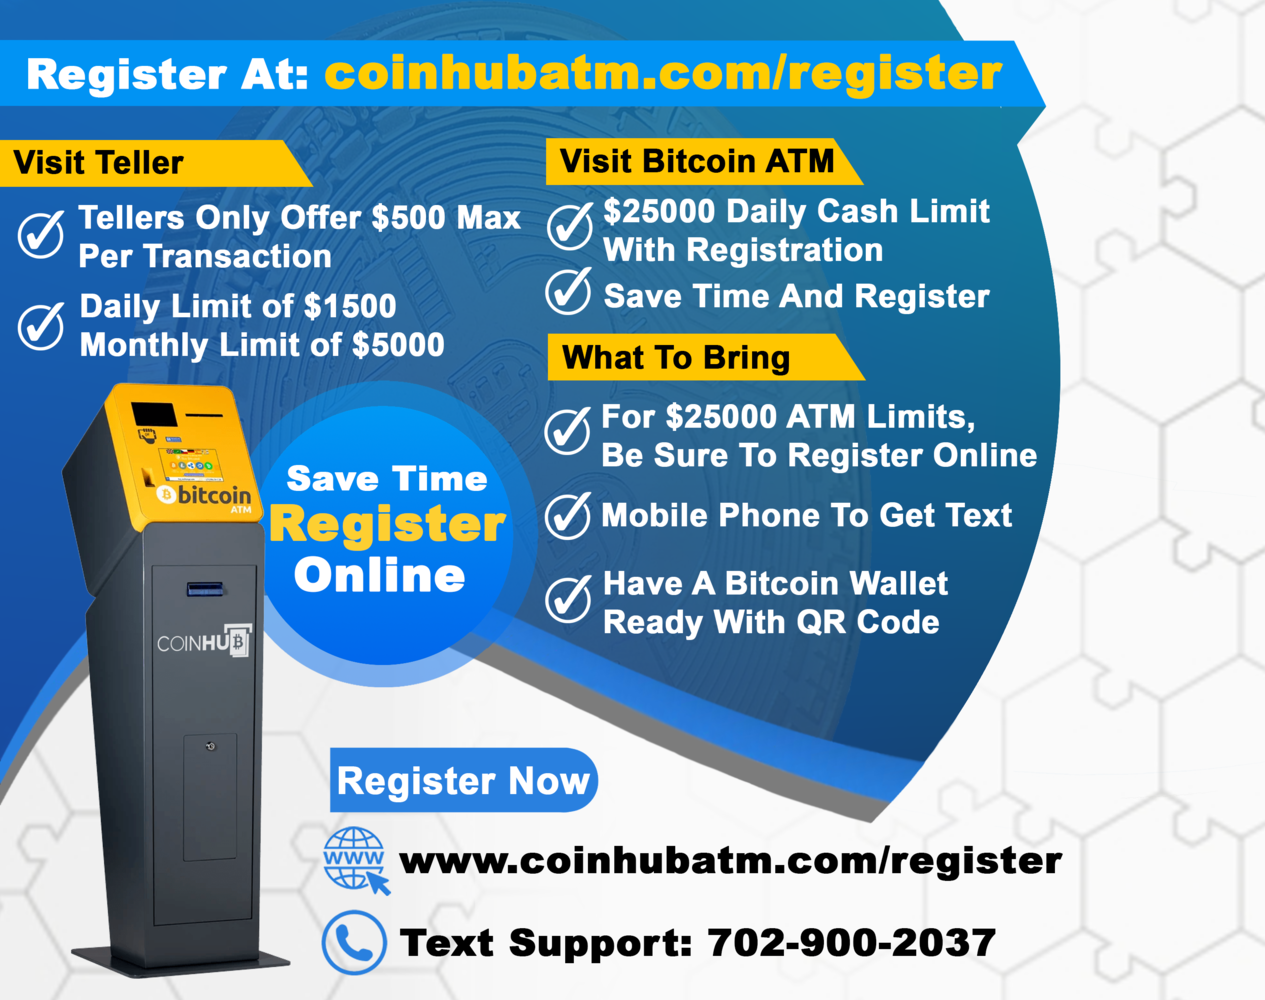 Coinhub Bitcoin ATM Teller 3701 N 132nd St, Omaha